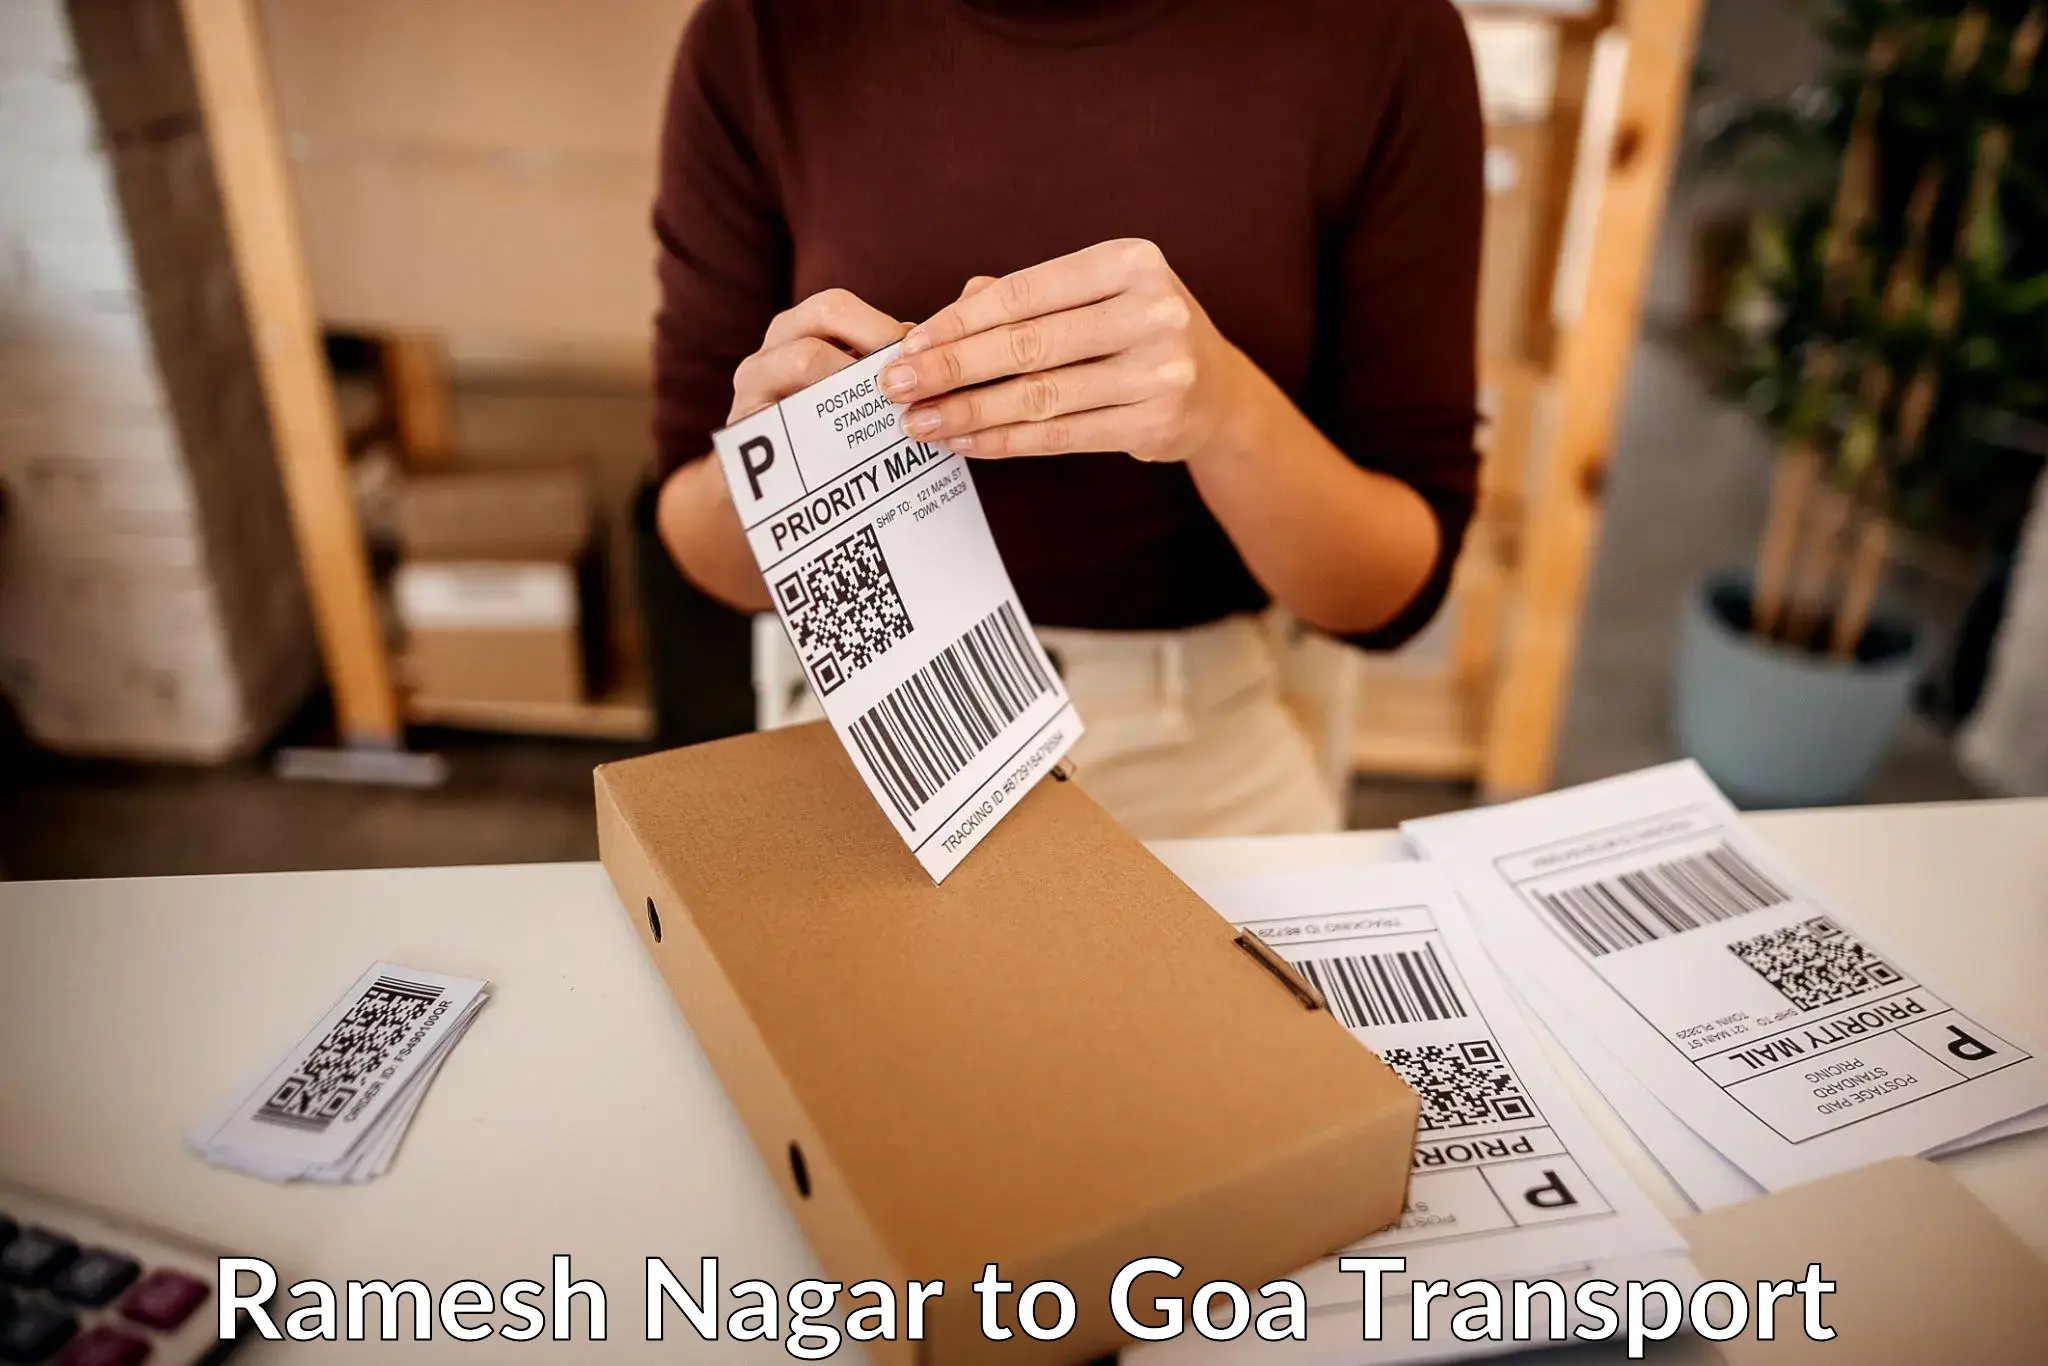 Online transport service Ramesh Nagar to Panjim